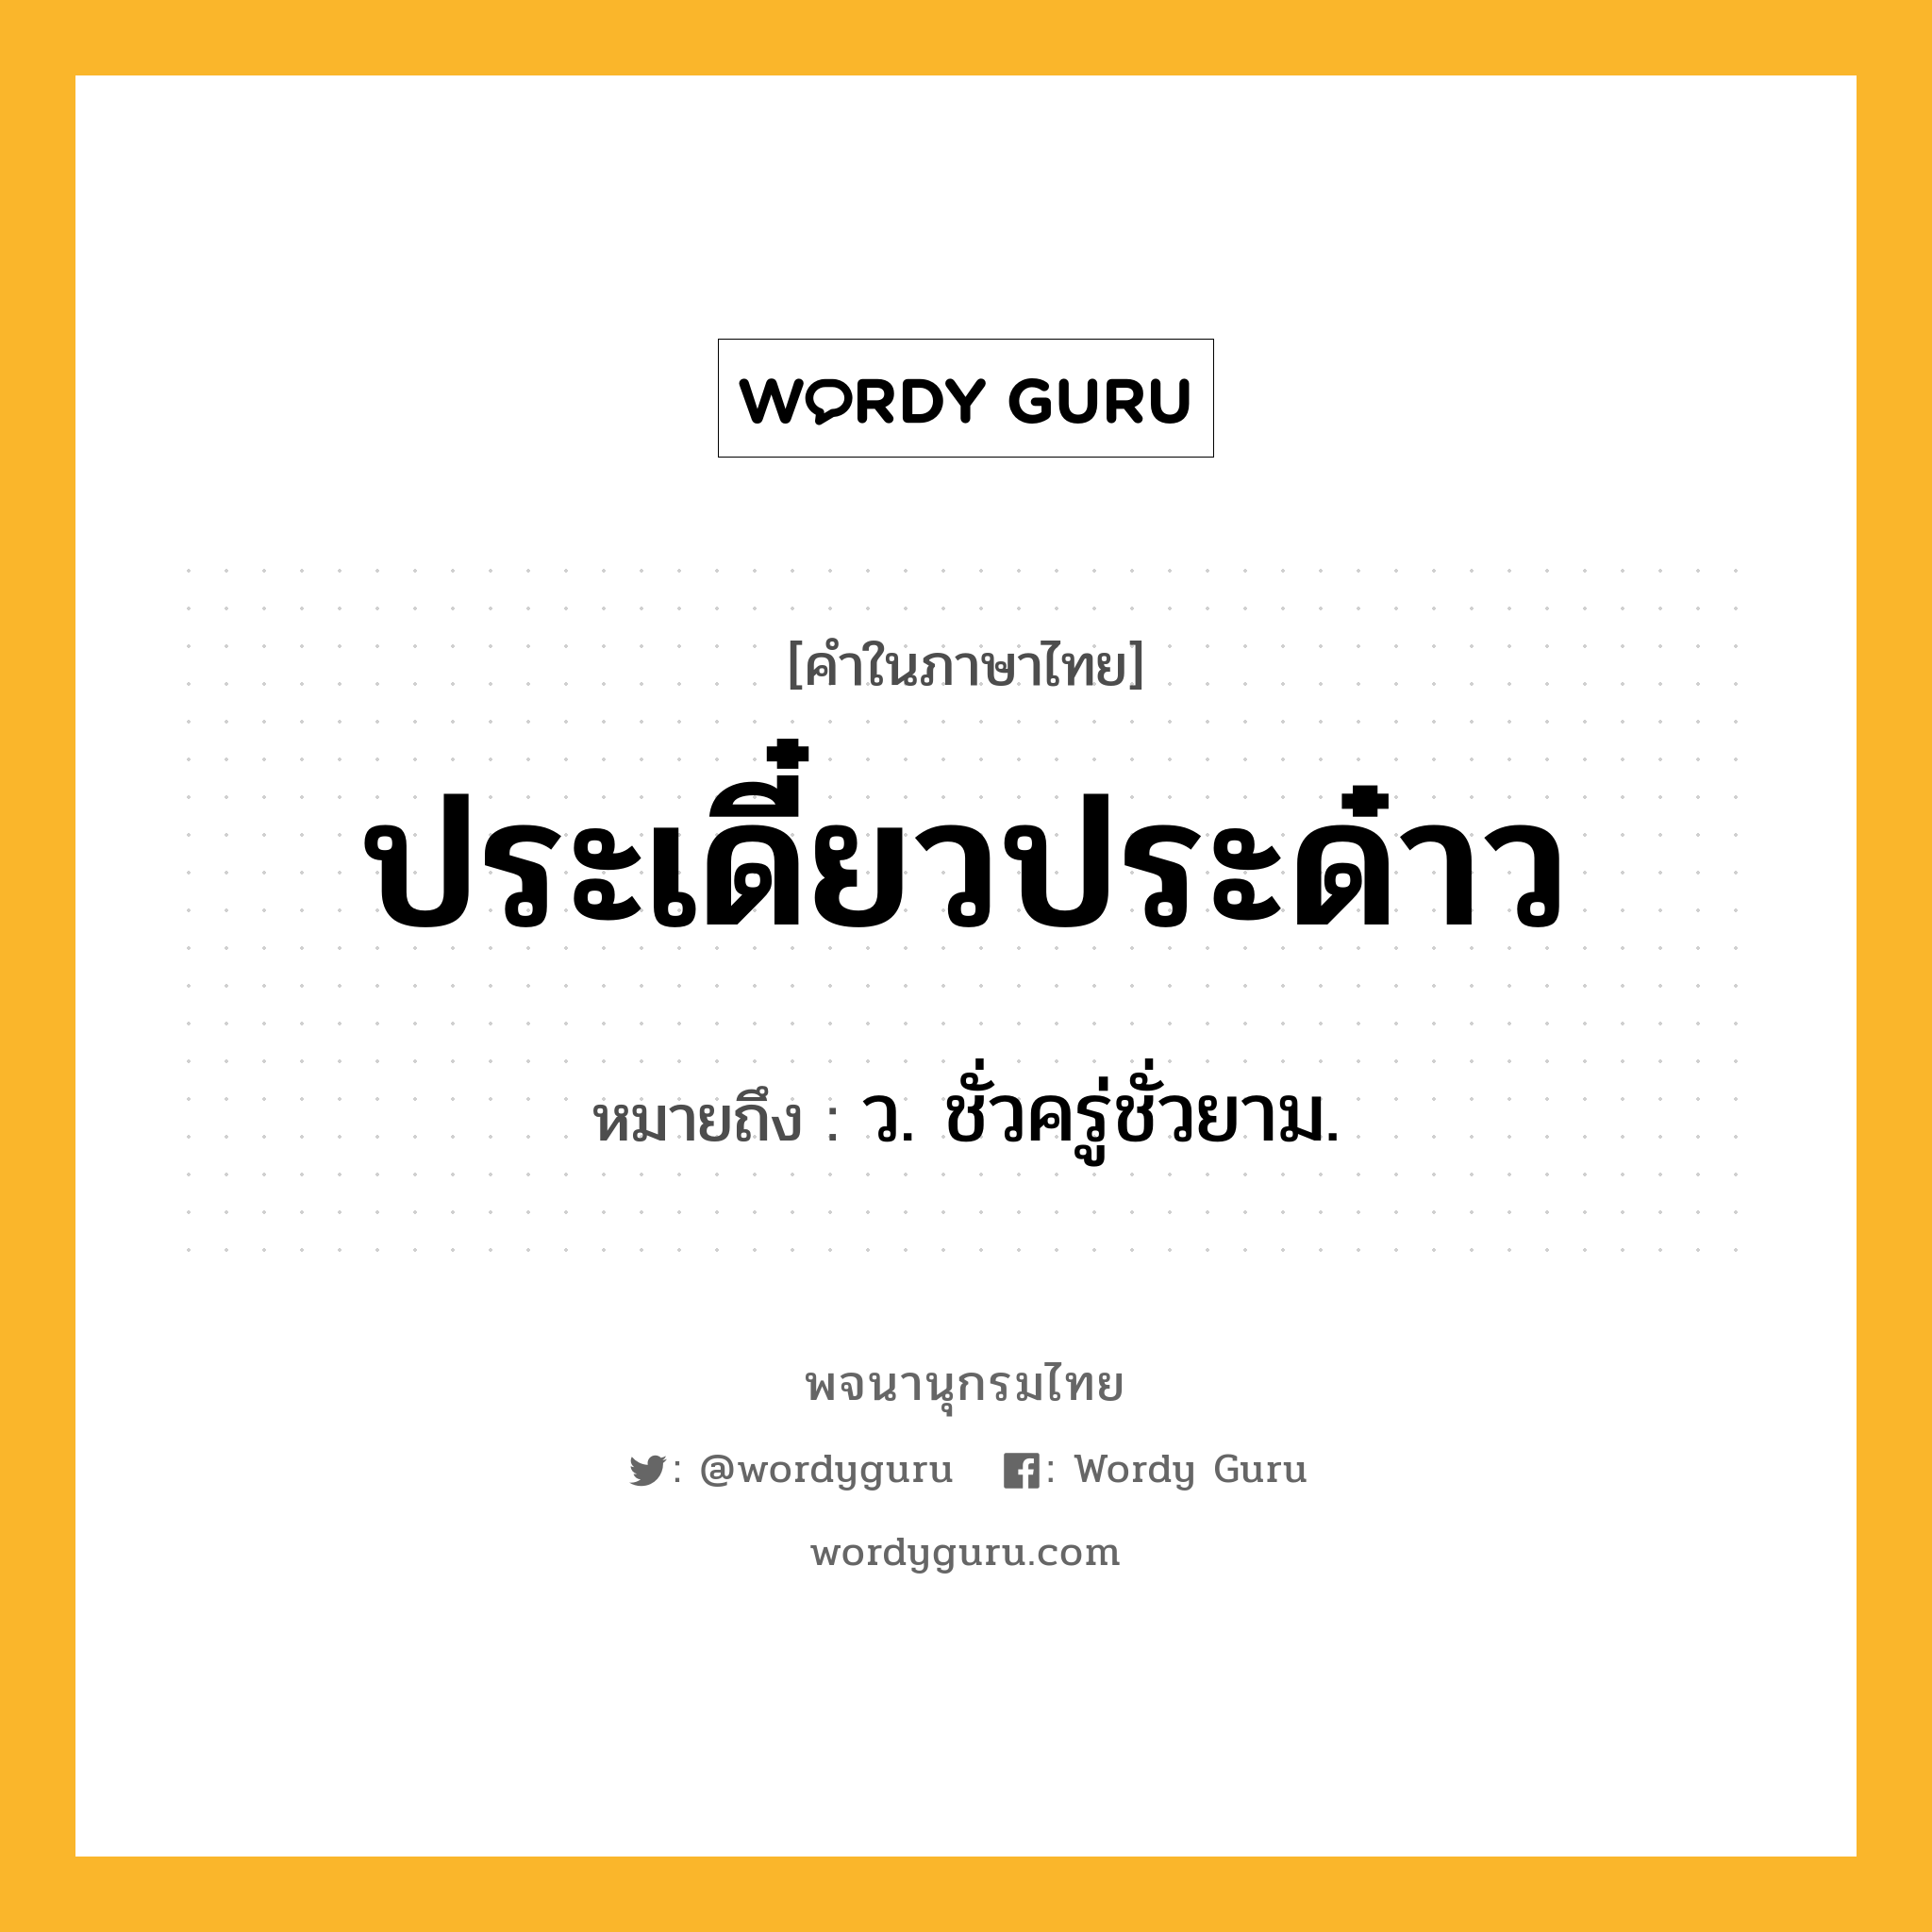 ประเดี๋ยวประด๋าว ความหมาย หมายถึงอะไร?, คำในภาษาไทย ประเดี๋ยวประด๋าว หมายถึง ว. ชั่วครู่ชั่วยาม.